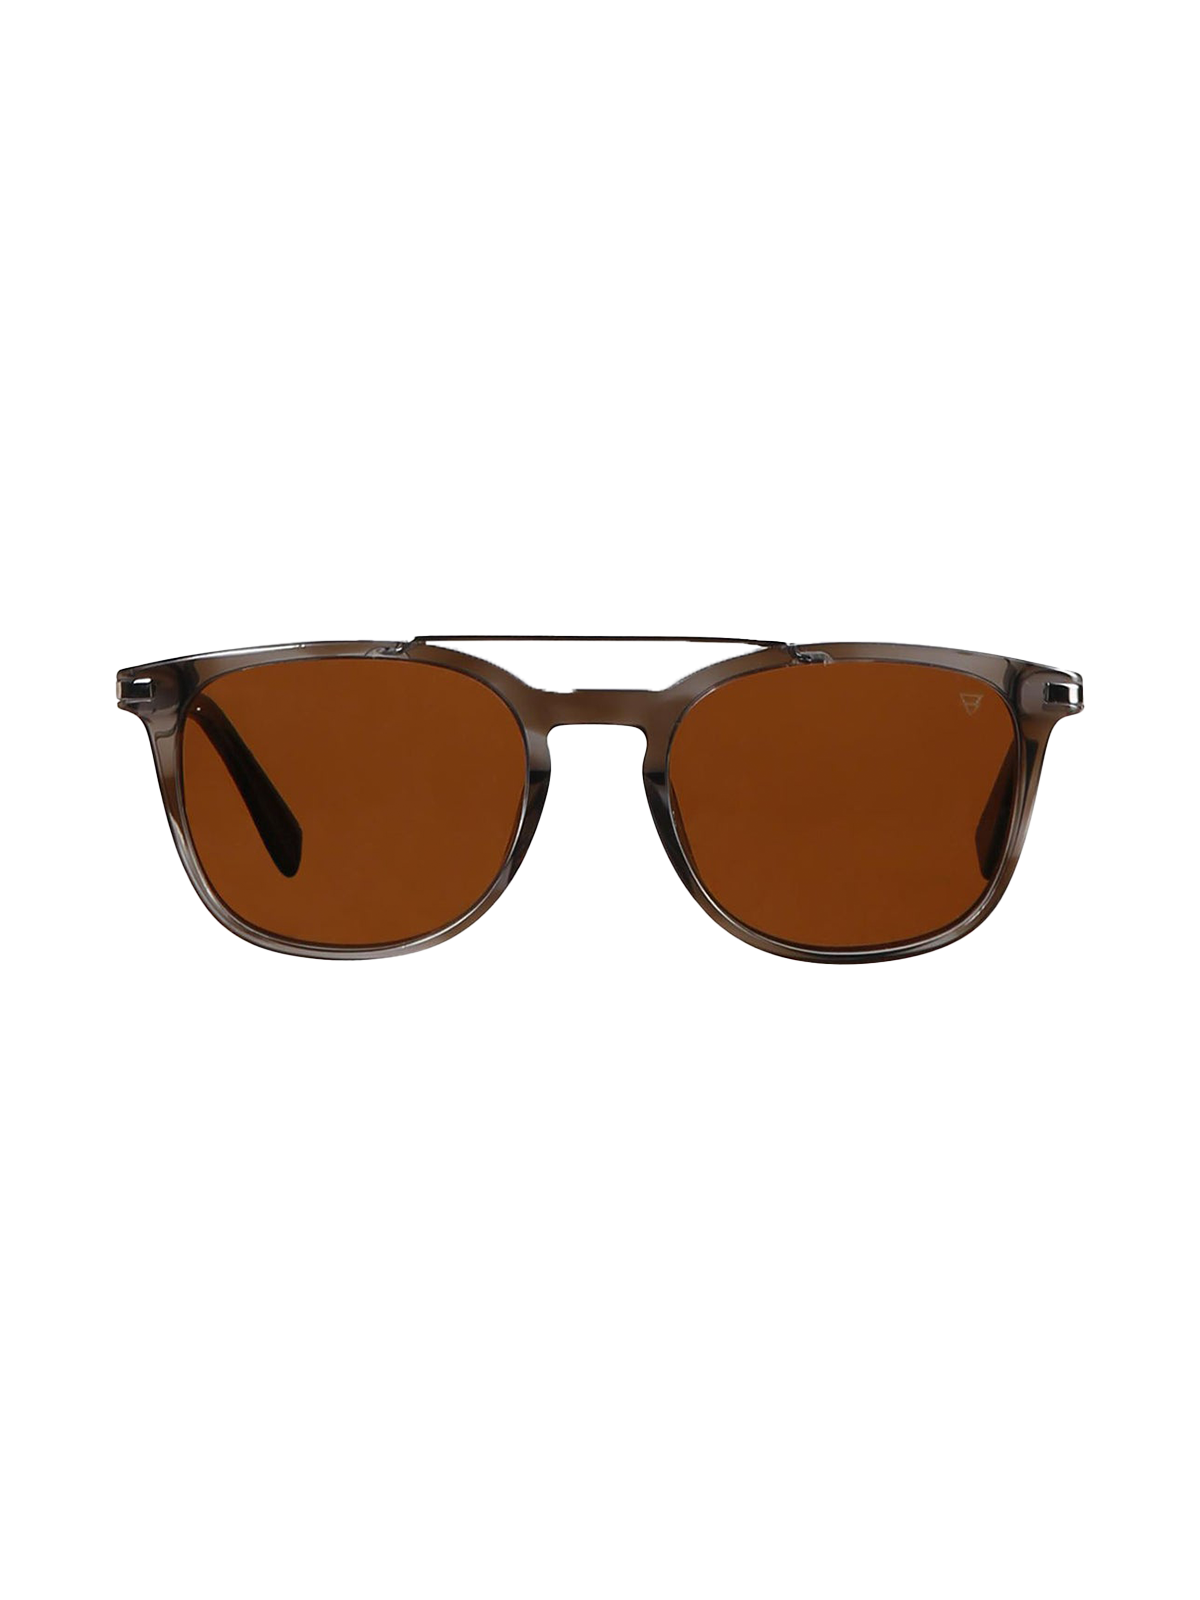 Duero 1 Unisex Sunglasses | Black